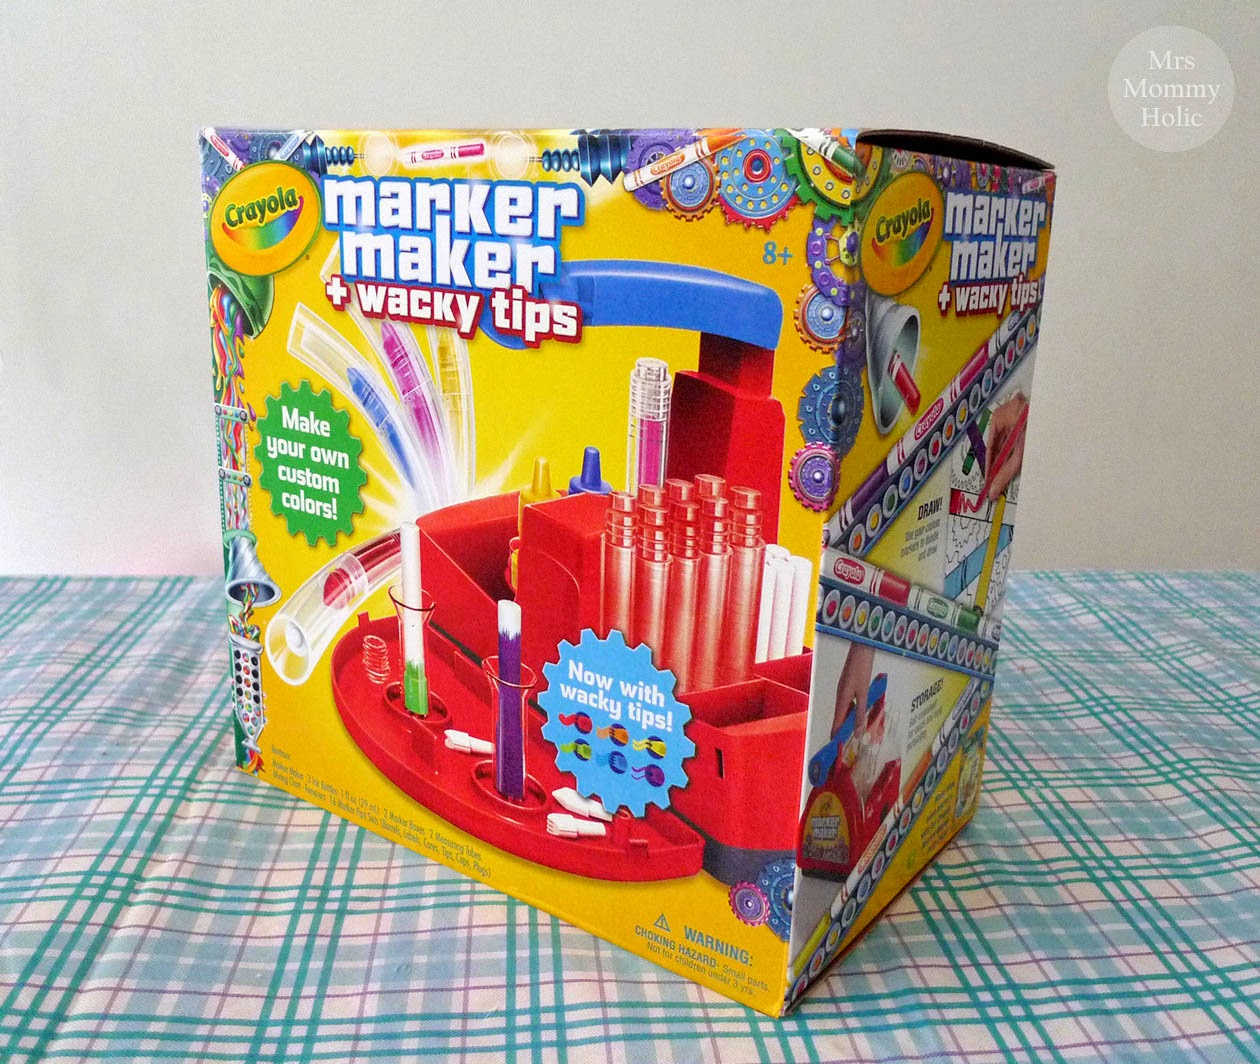 Crayola - Marker Maker